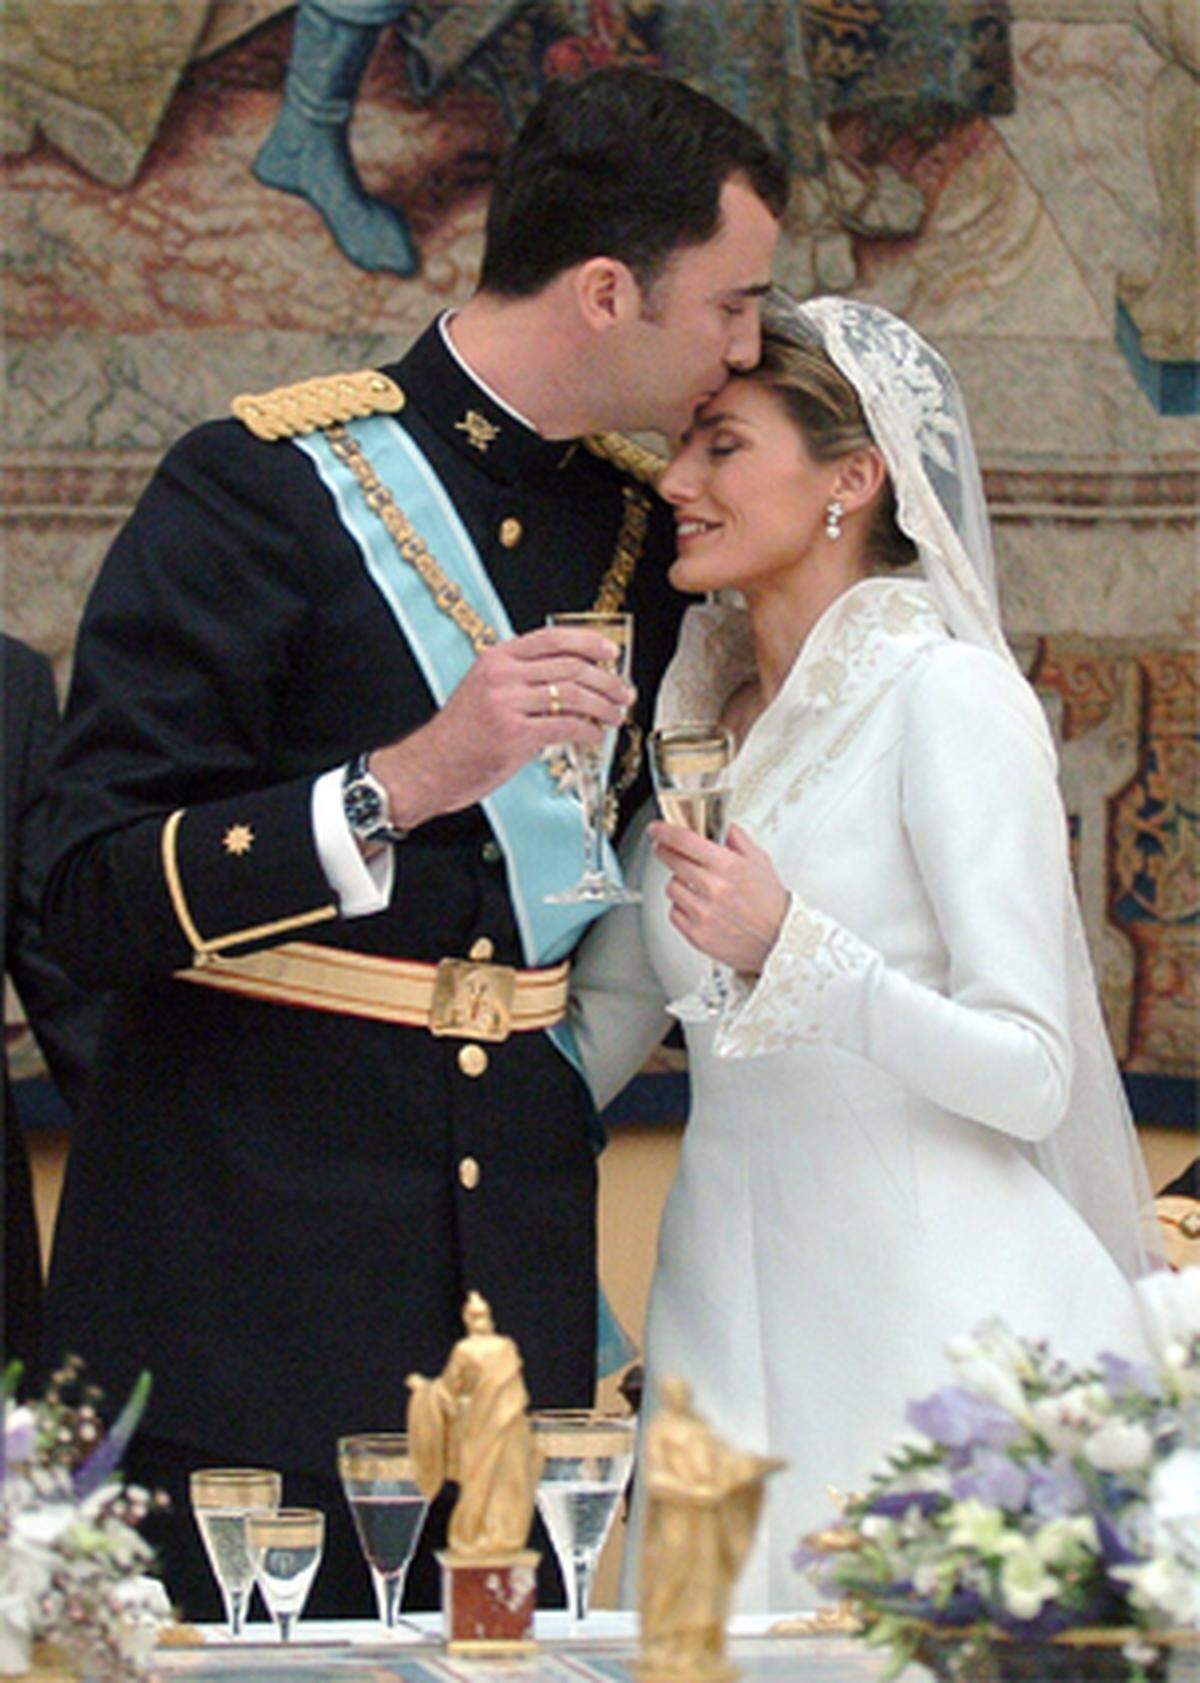 Der spanische Kronprinz Felipe und die frühere TV-Moderatorin Letizia Ortiz schließen in der Madrider Almudena-Kathedrale die Ehe. Felipe ist der erste Königssohn in der spanischen Geschichte, der eine Bürgerliche heiratet und nicht auf die Thronrechte verzichten muss.